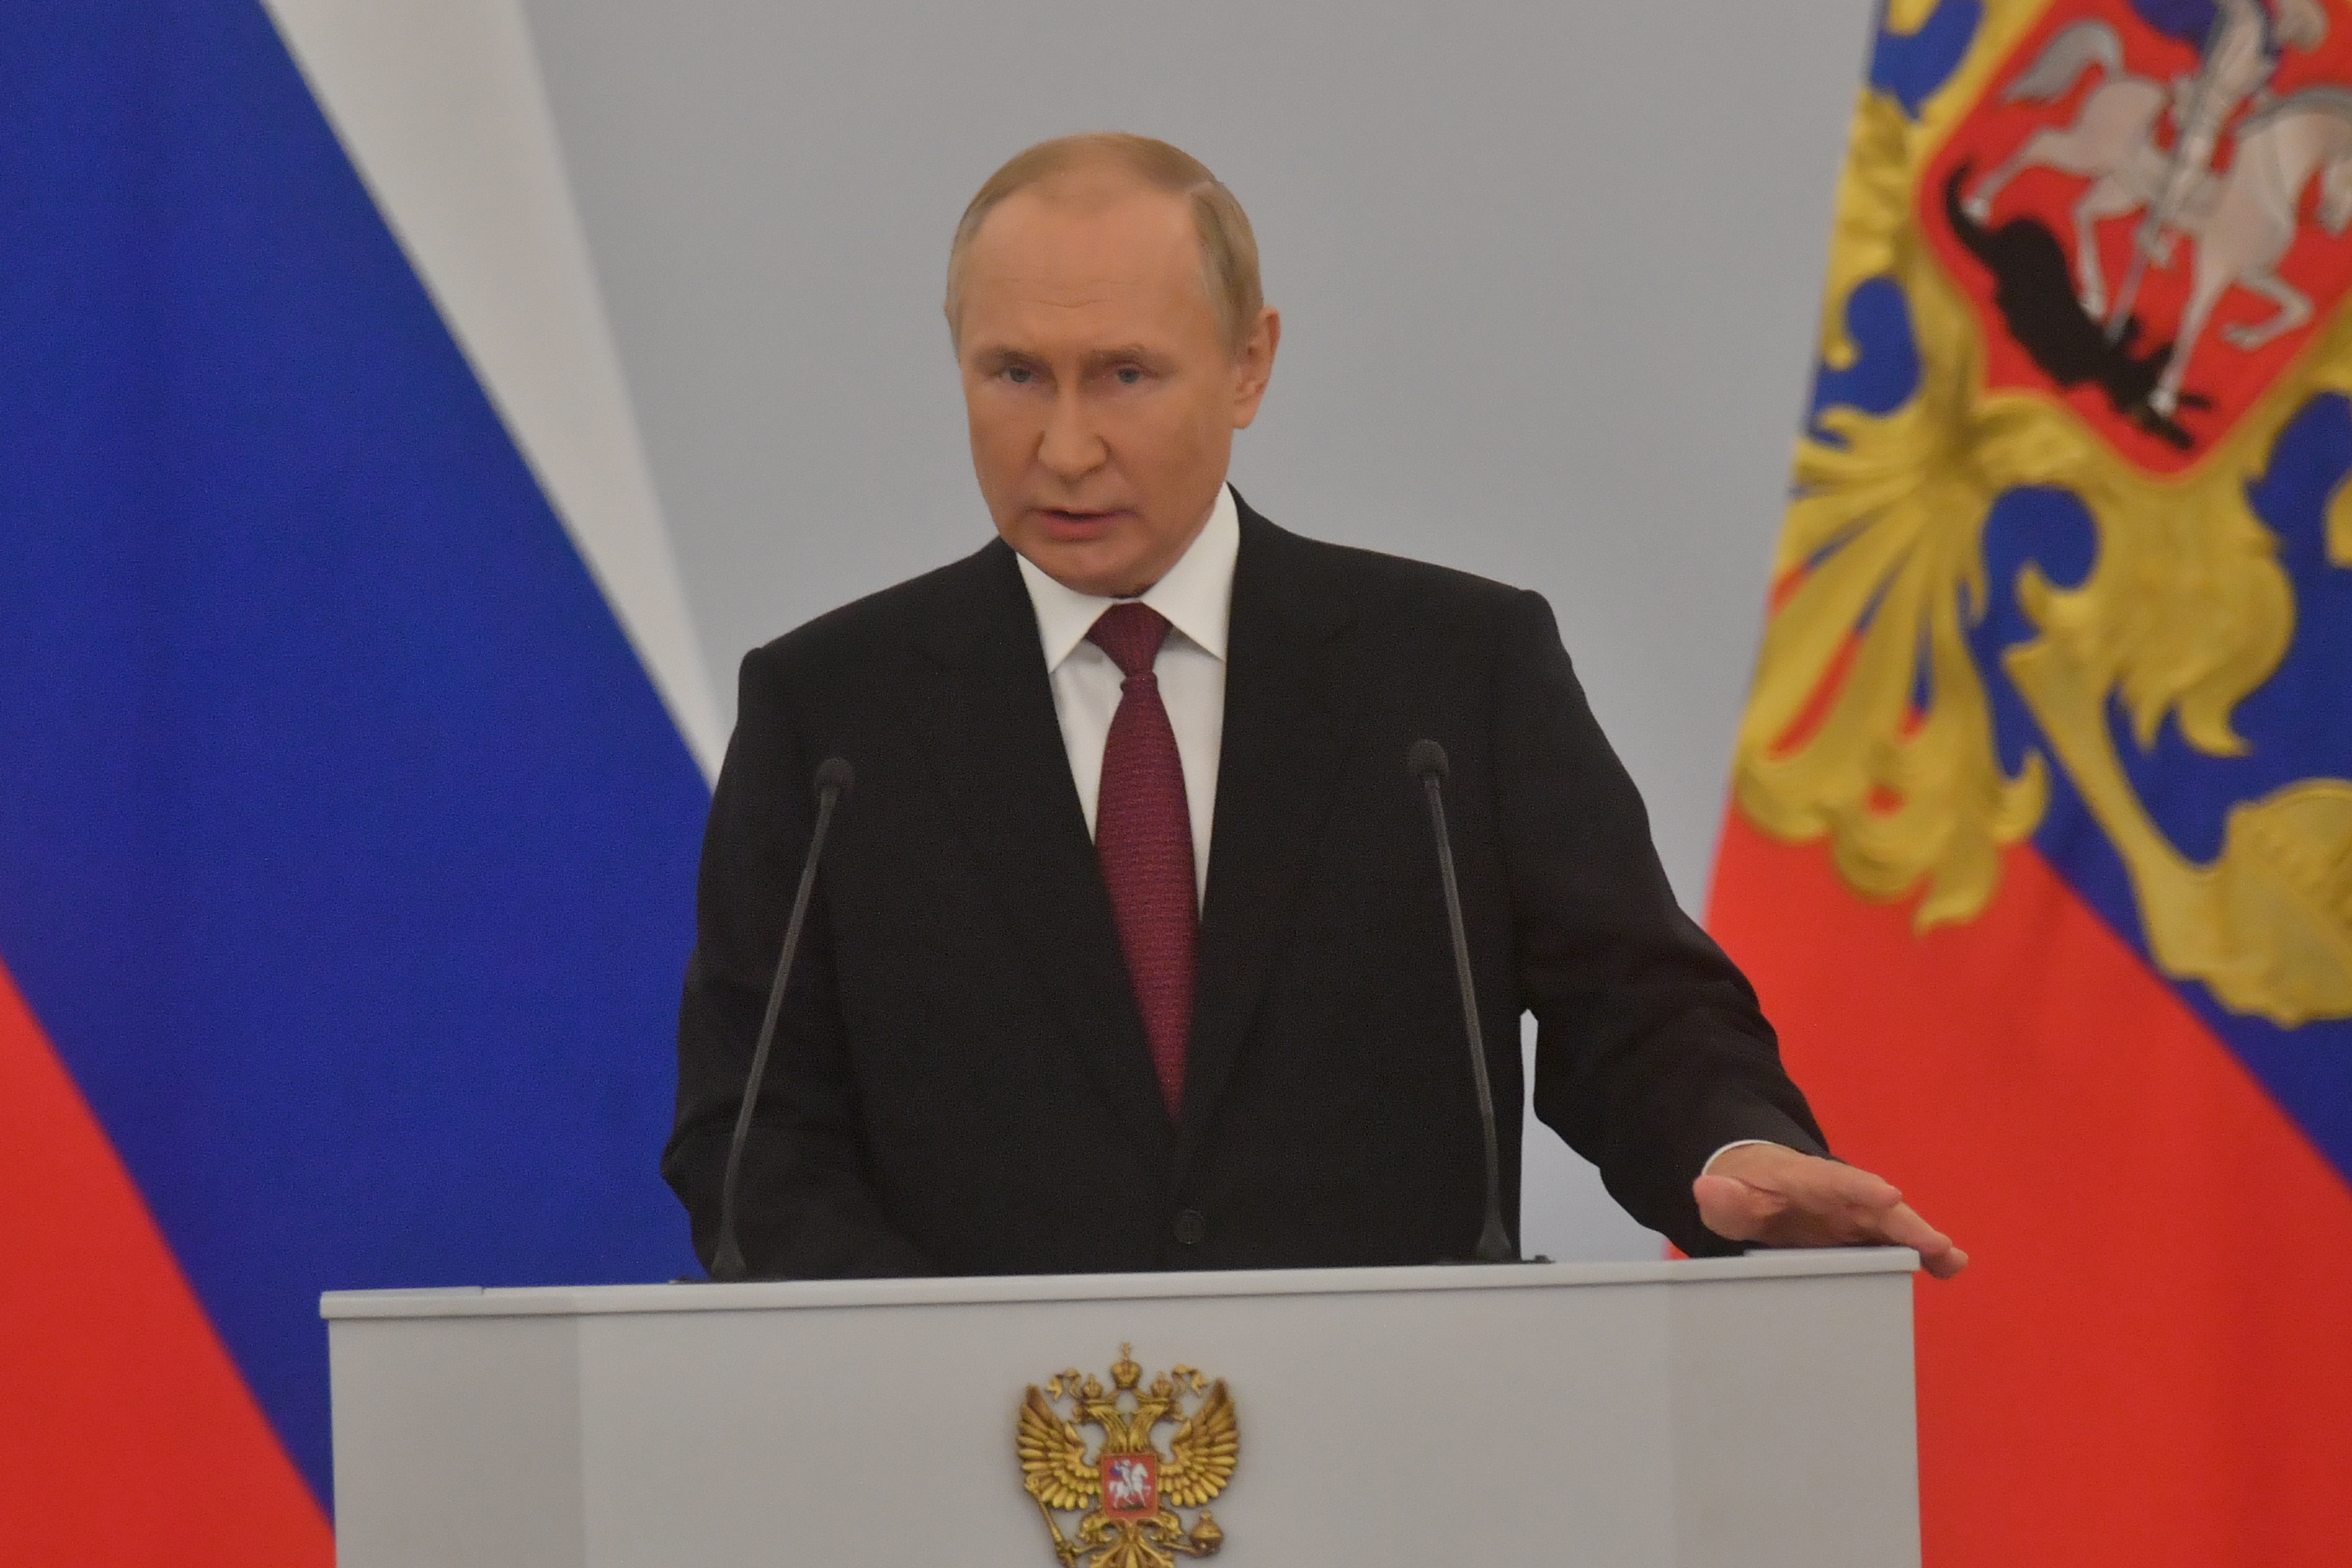  Владимир Путин поставил задачу максимально быстро интегрировать новые регионы России в судебную систему страны